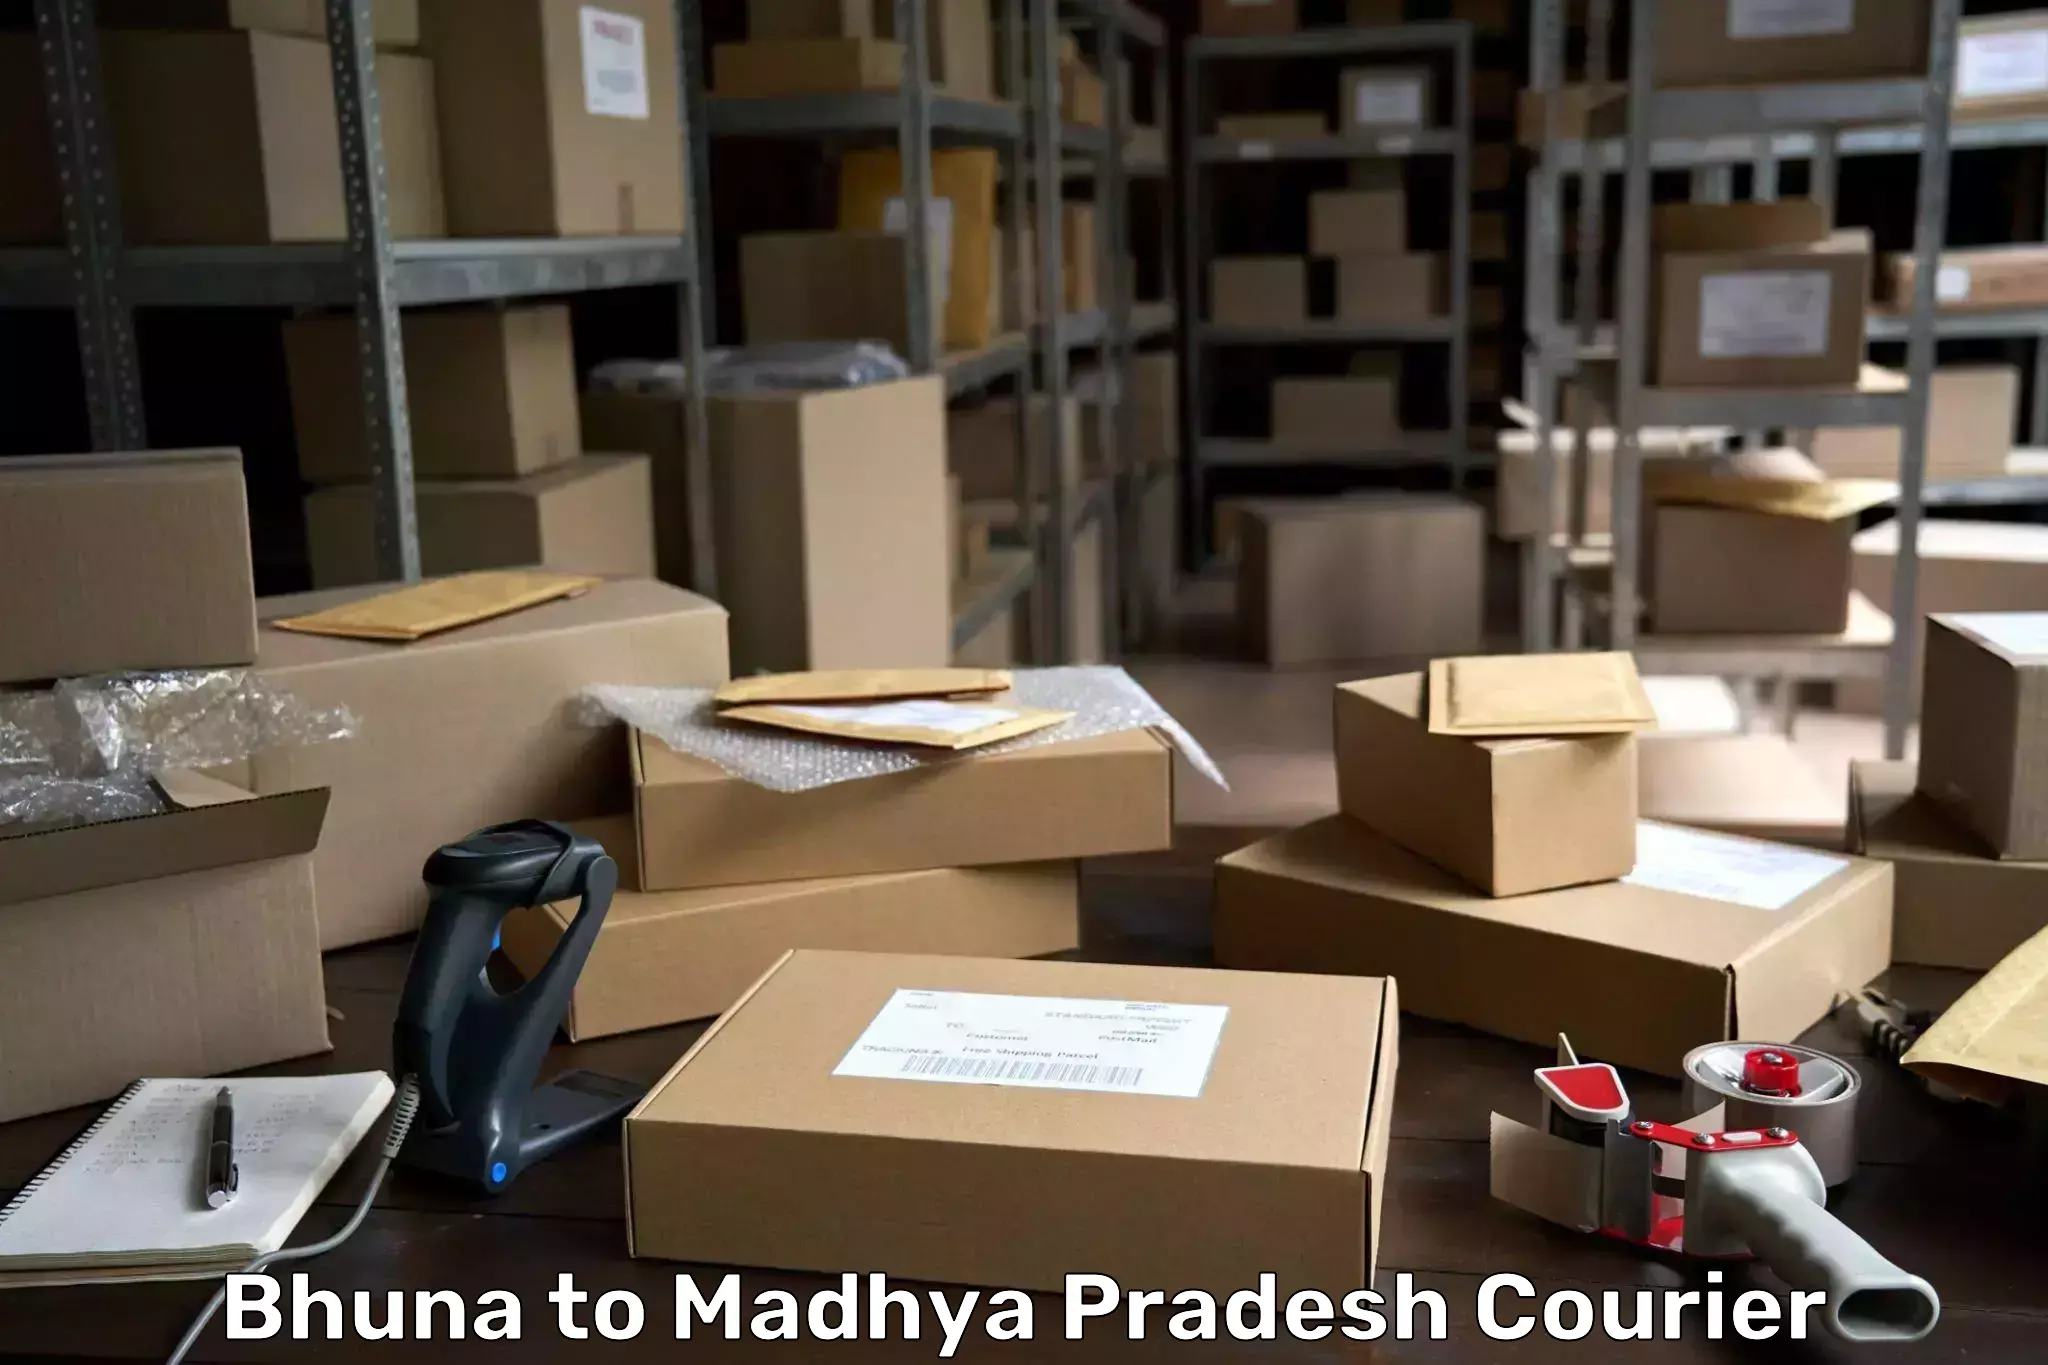 Customer-focused courier Bhuna to Maheshwar